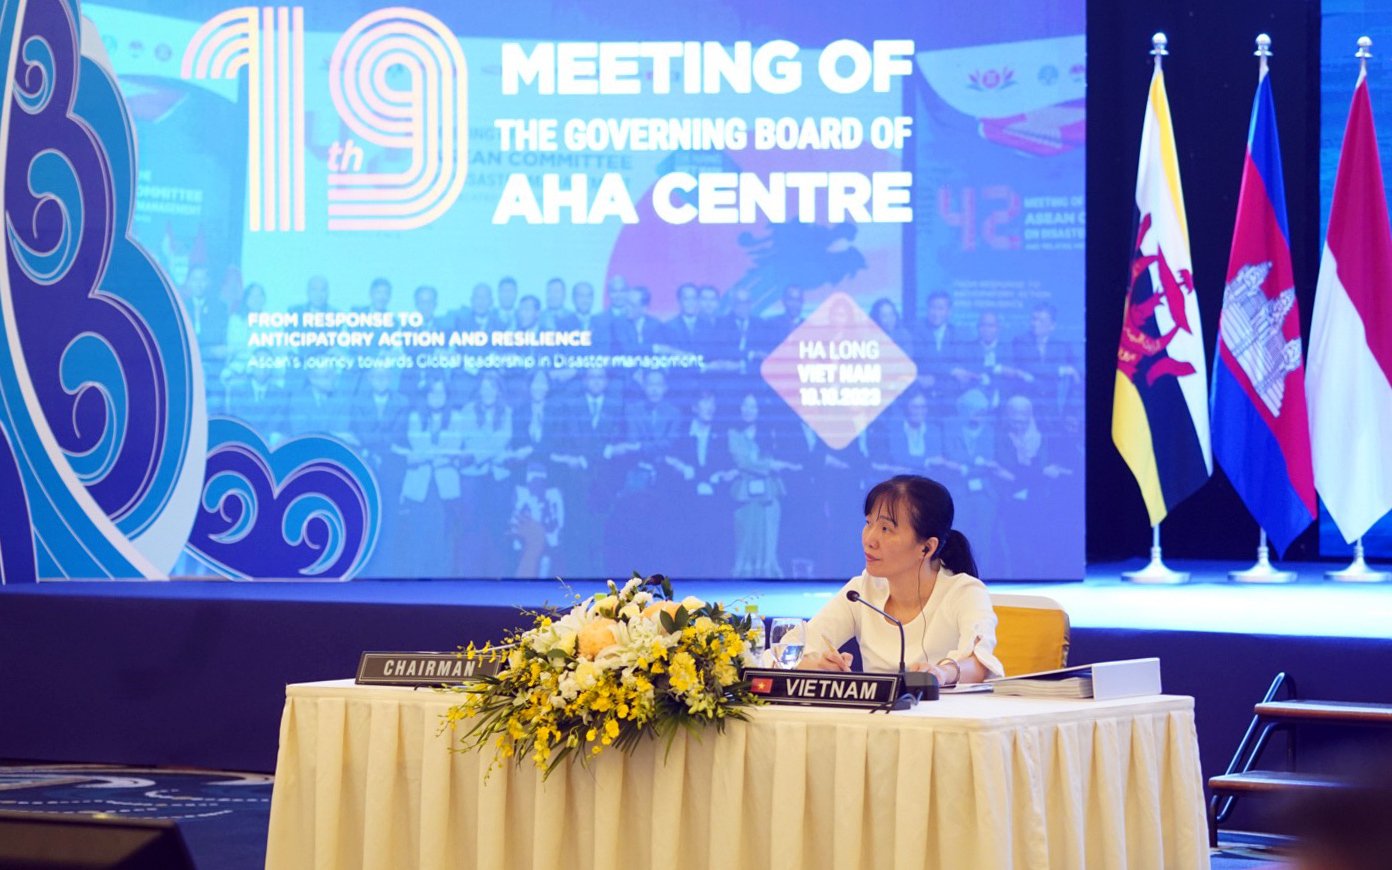 Bà Đoàn Thị Tuyết Nga, đại diện nước chủ nhà Việt Nam chủ trì phiên họp. Ảnh: Quang Dũng.